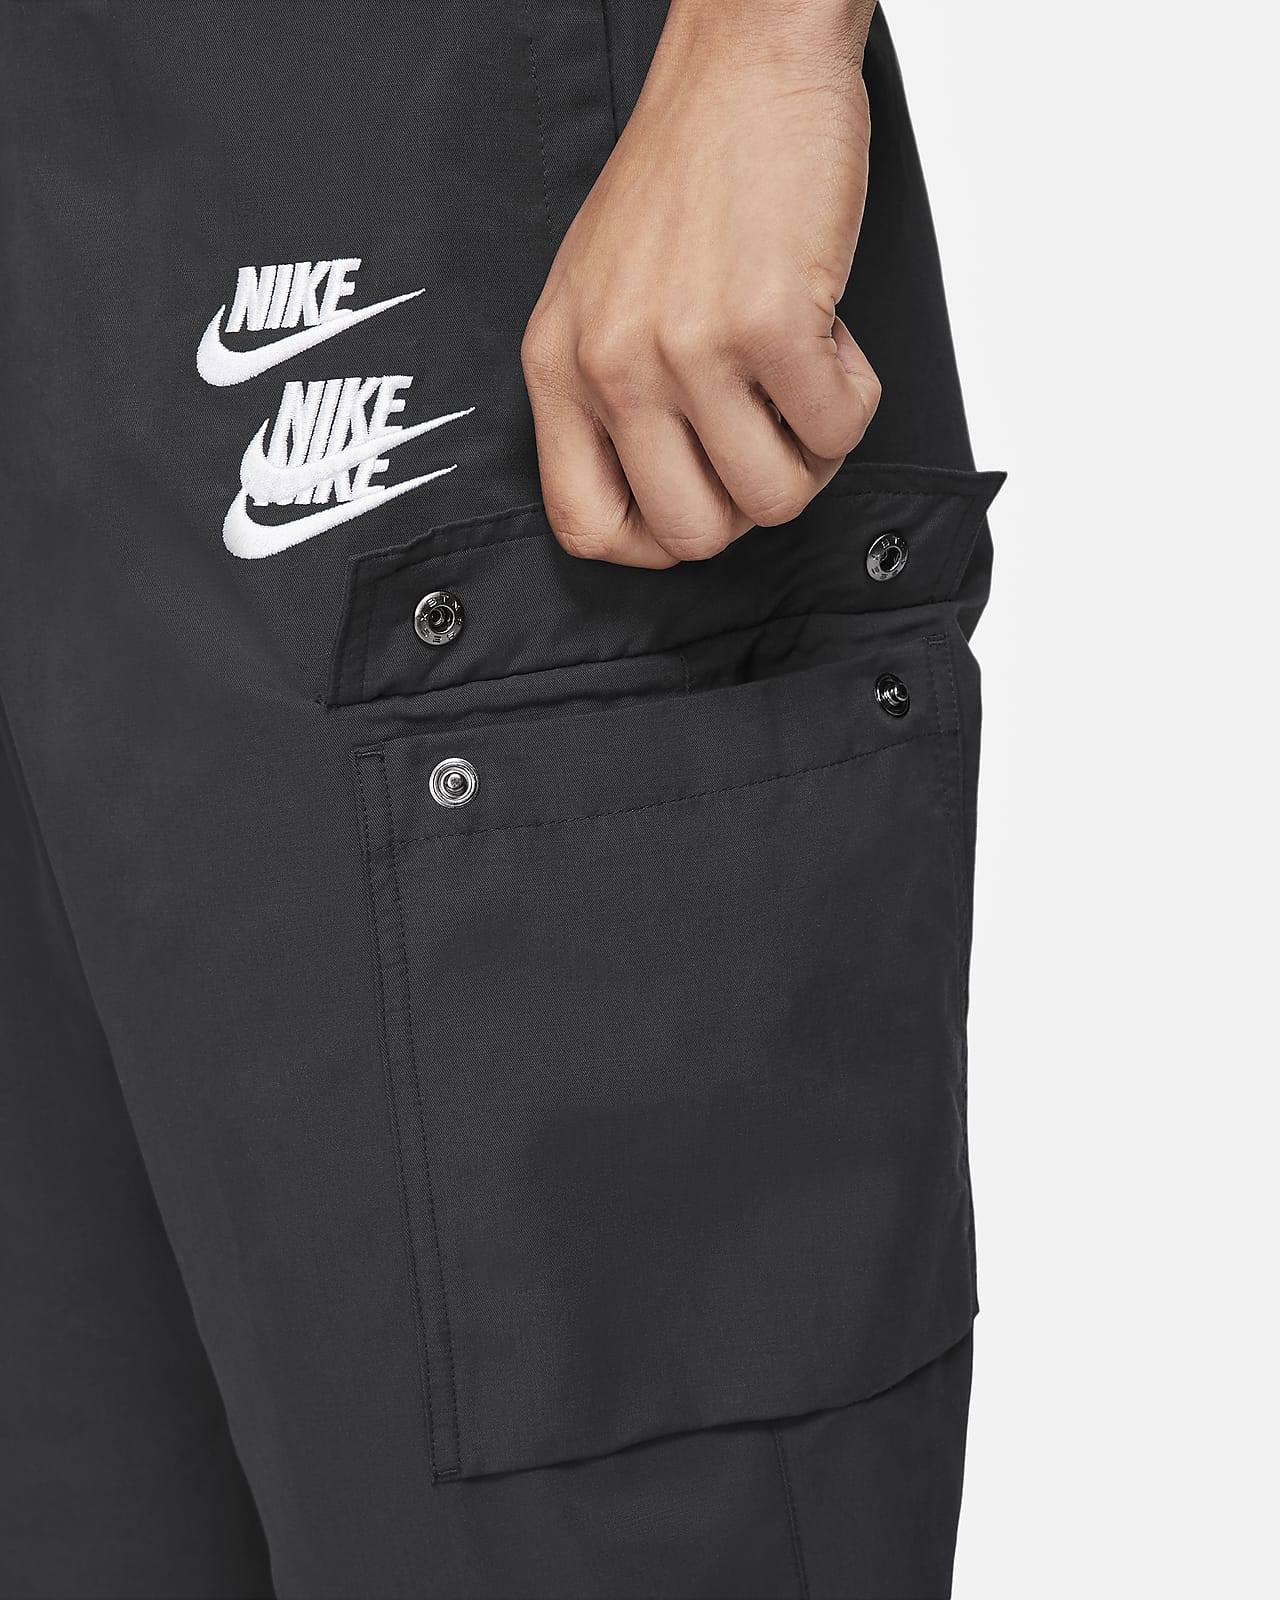 men's cargo trousers nike sportswear